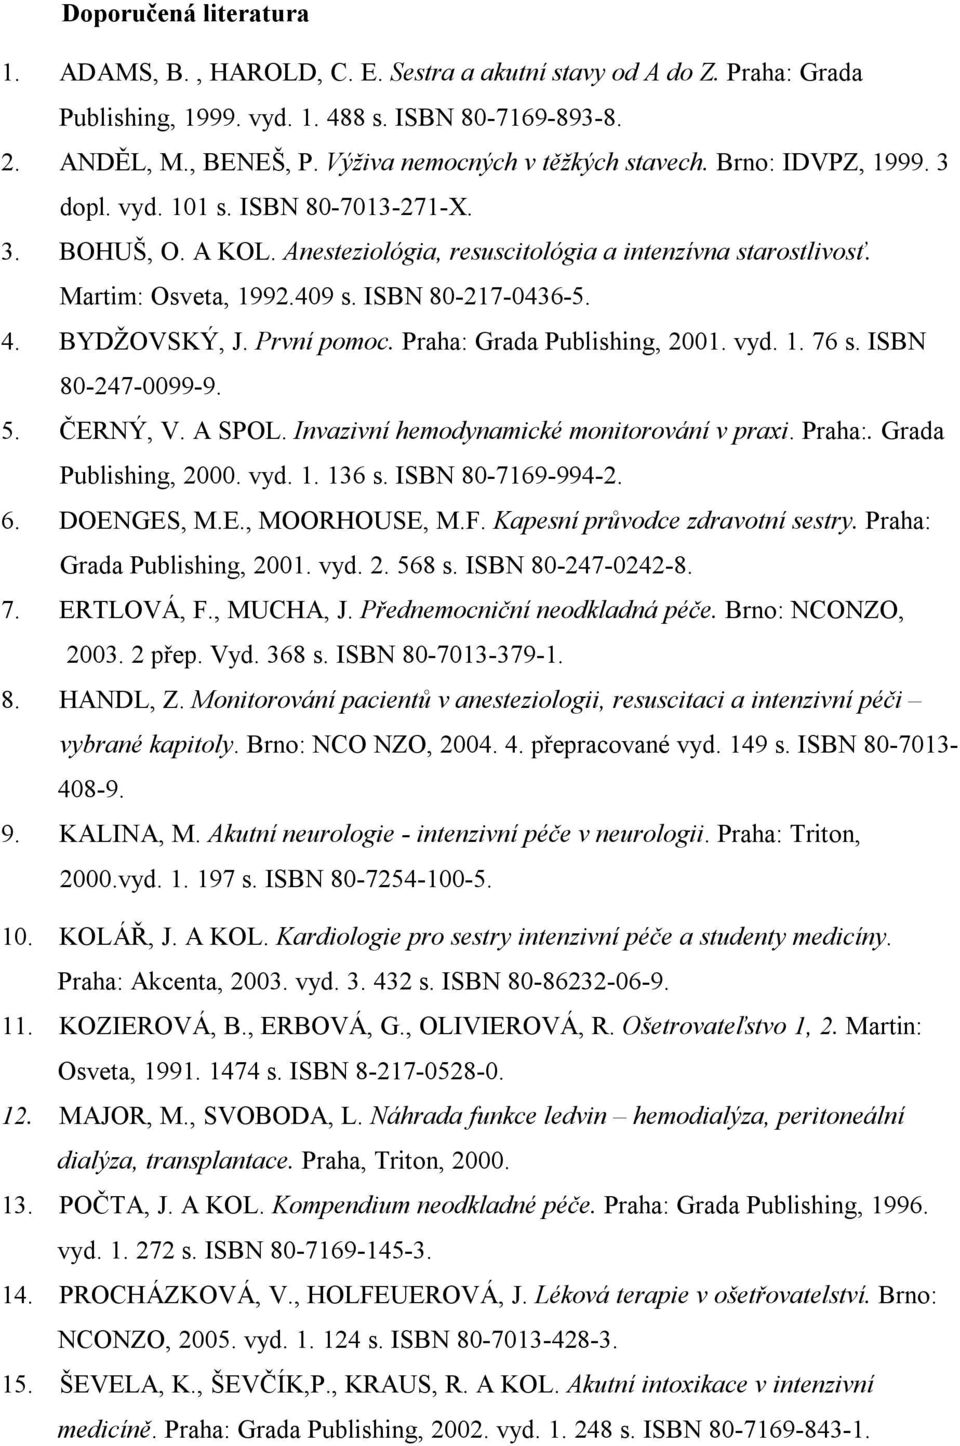 409 s. ISBN 80-217-0436-5. 4. BYDŽOVSKÝ, J. První pomoc. Praha: Grada Publishing, 2001. vyd. 1. 76 s. ISBN 80-247-0099-9. 5. ČERNÝ, V. A SPOL. Invazivní hemodynamické monitorování v praxi. Praha:. Grada Publishing, 2000.